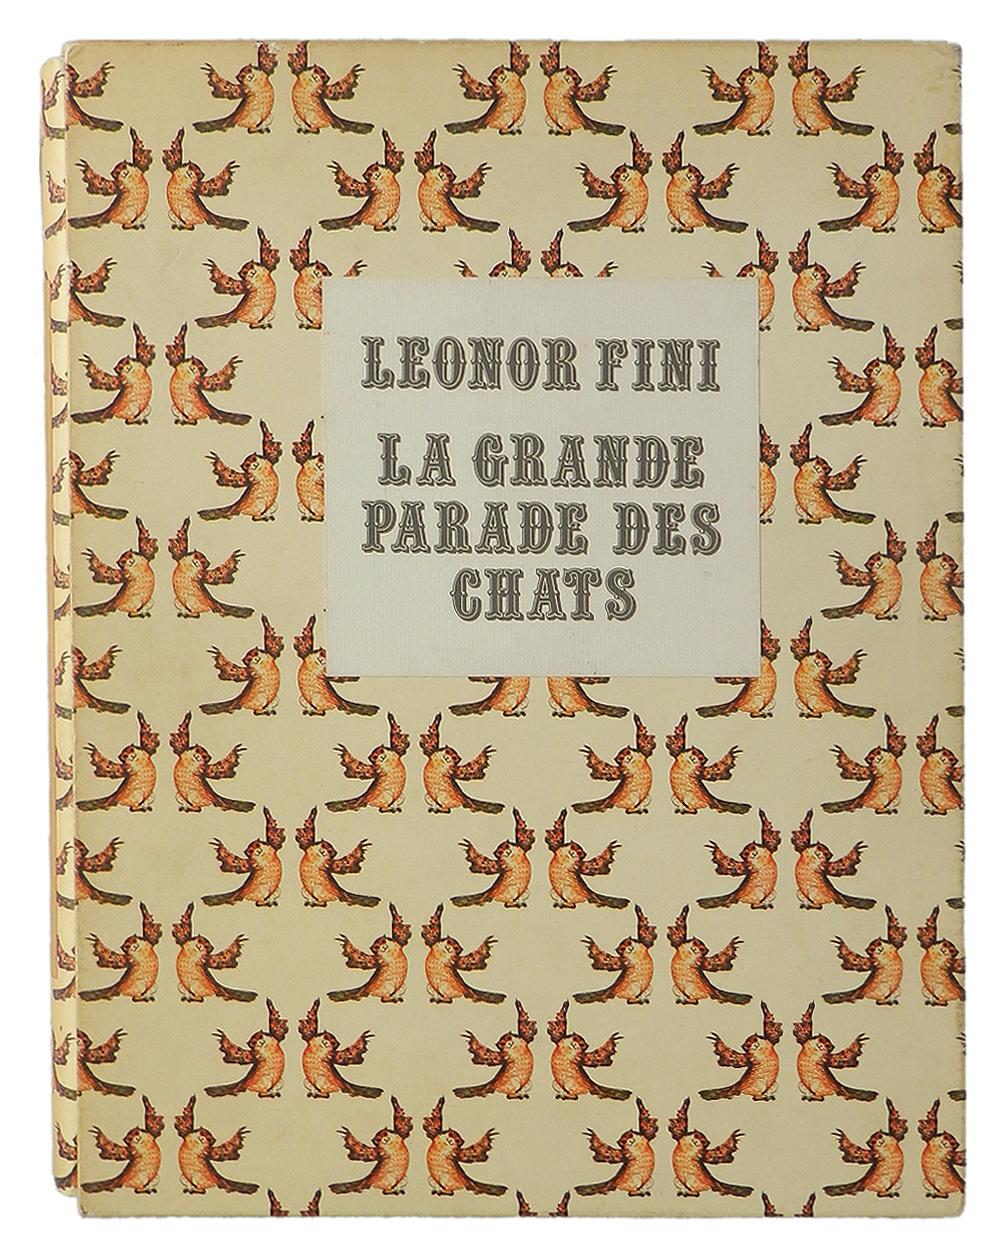 La Grande Parade des Chats 60 Illustrations of Cats by Leonor Fini 1973